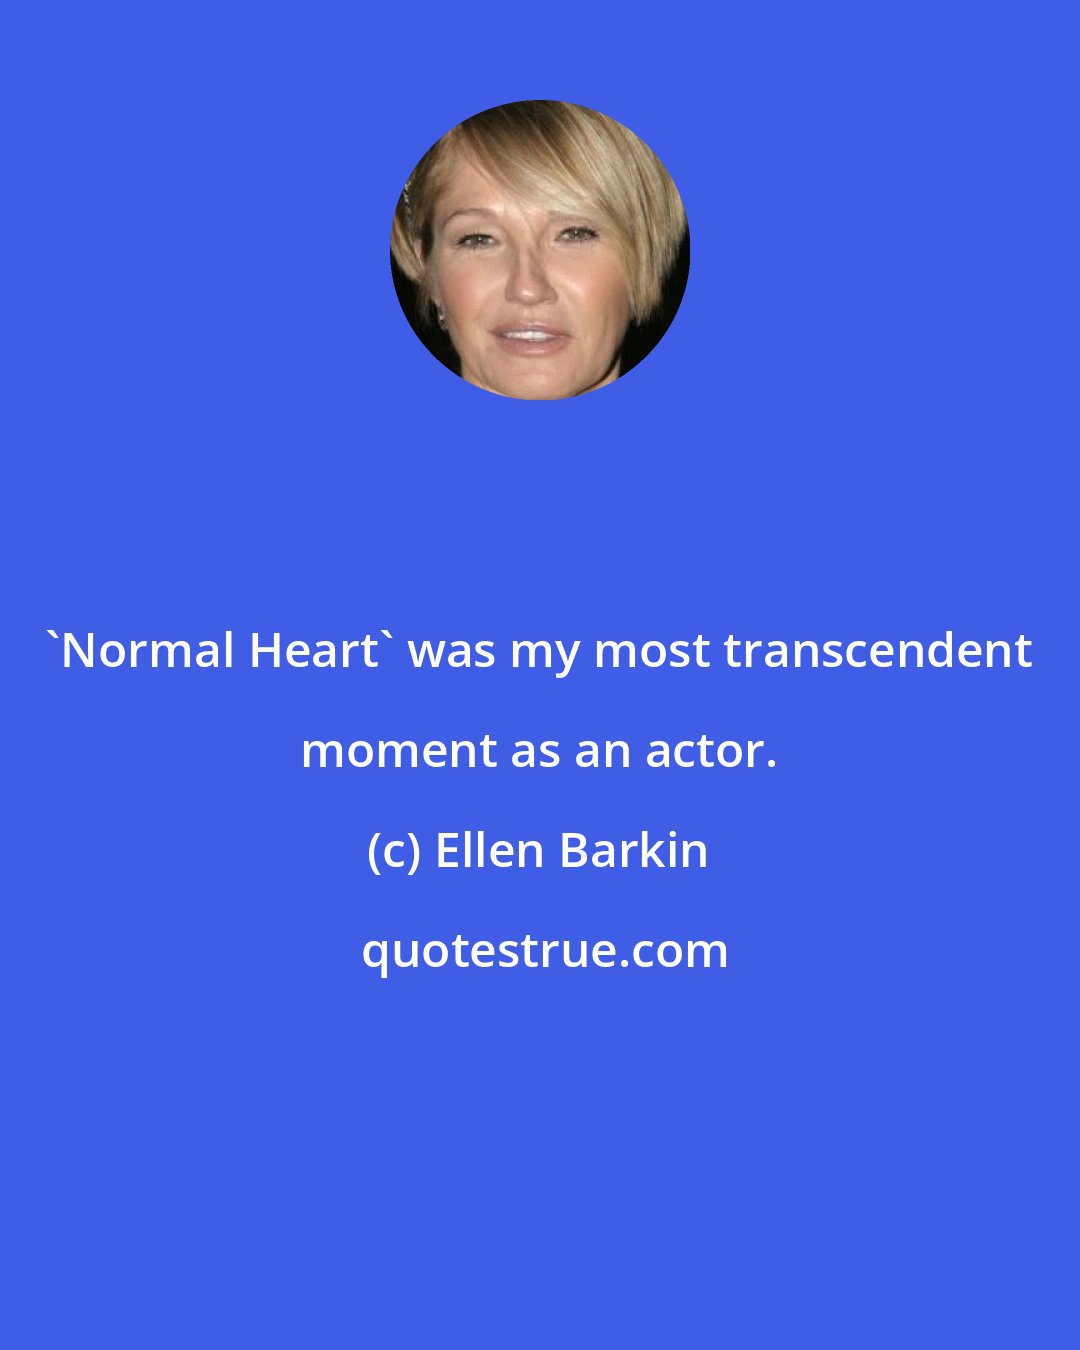 Ellen Barkin: 'Normal Heart' was my most transcendent moment as an actor.